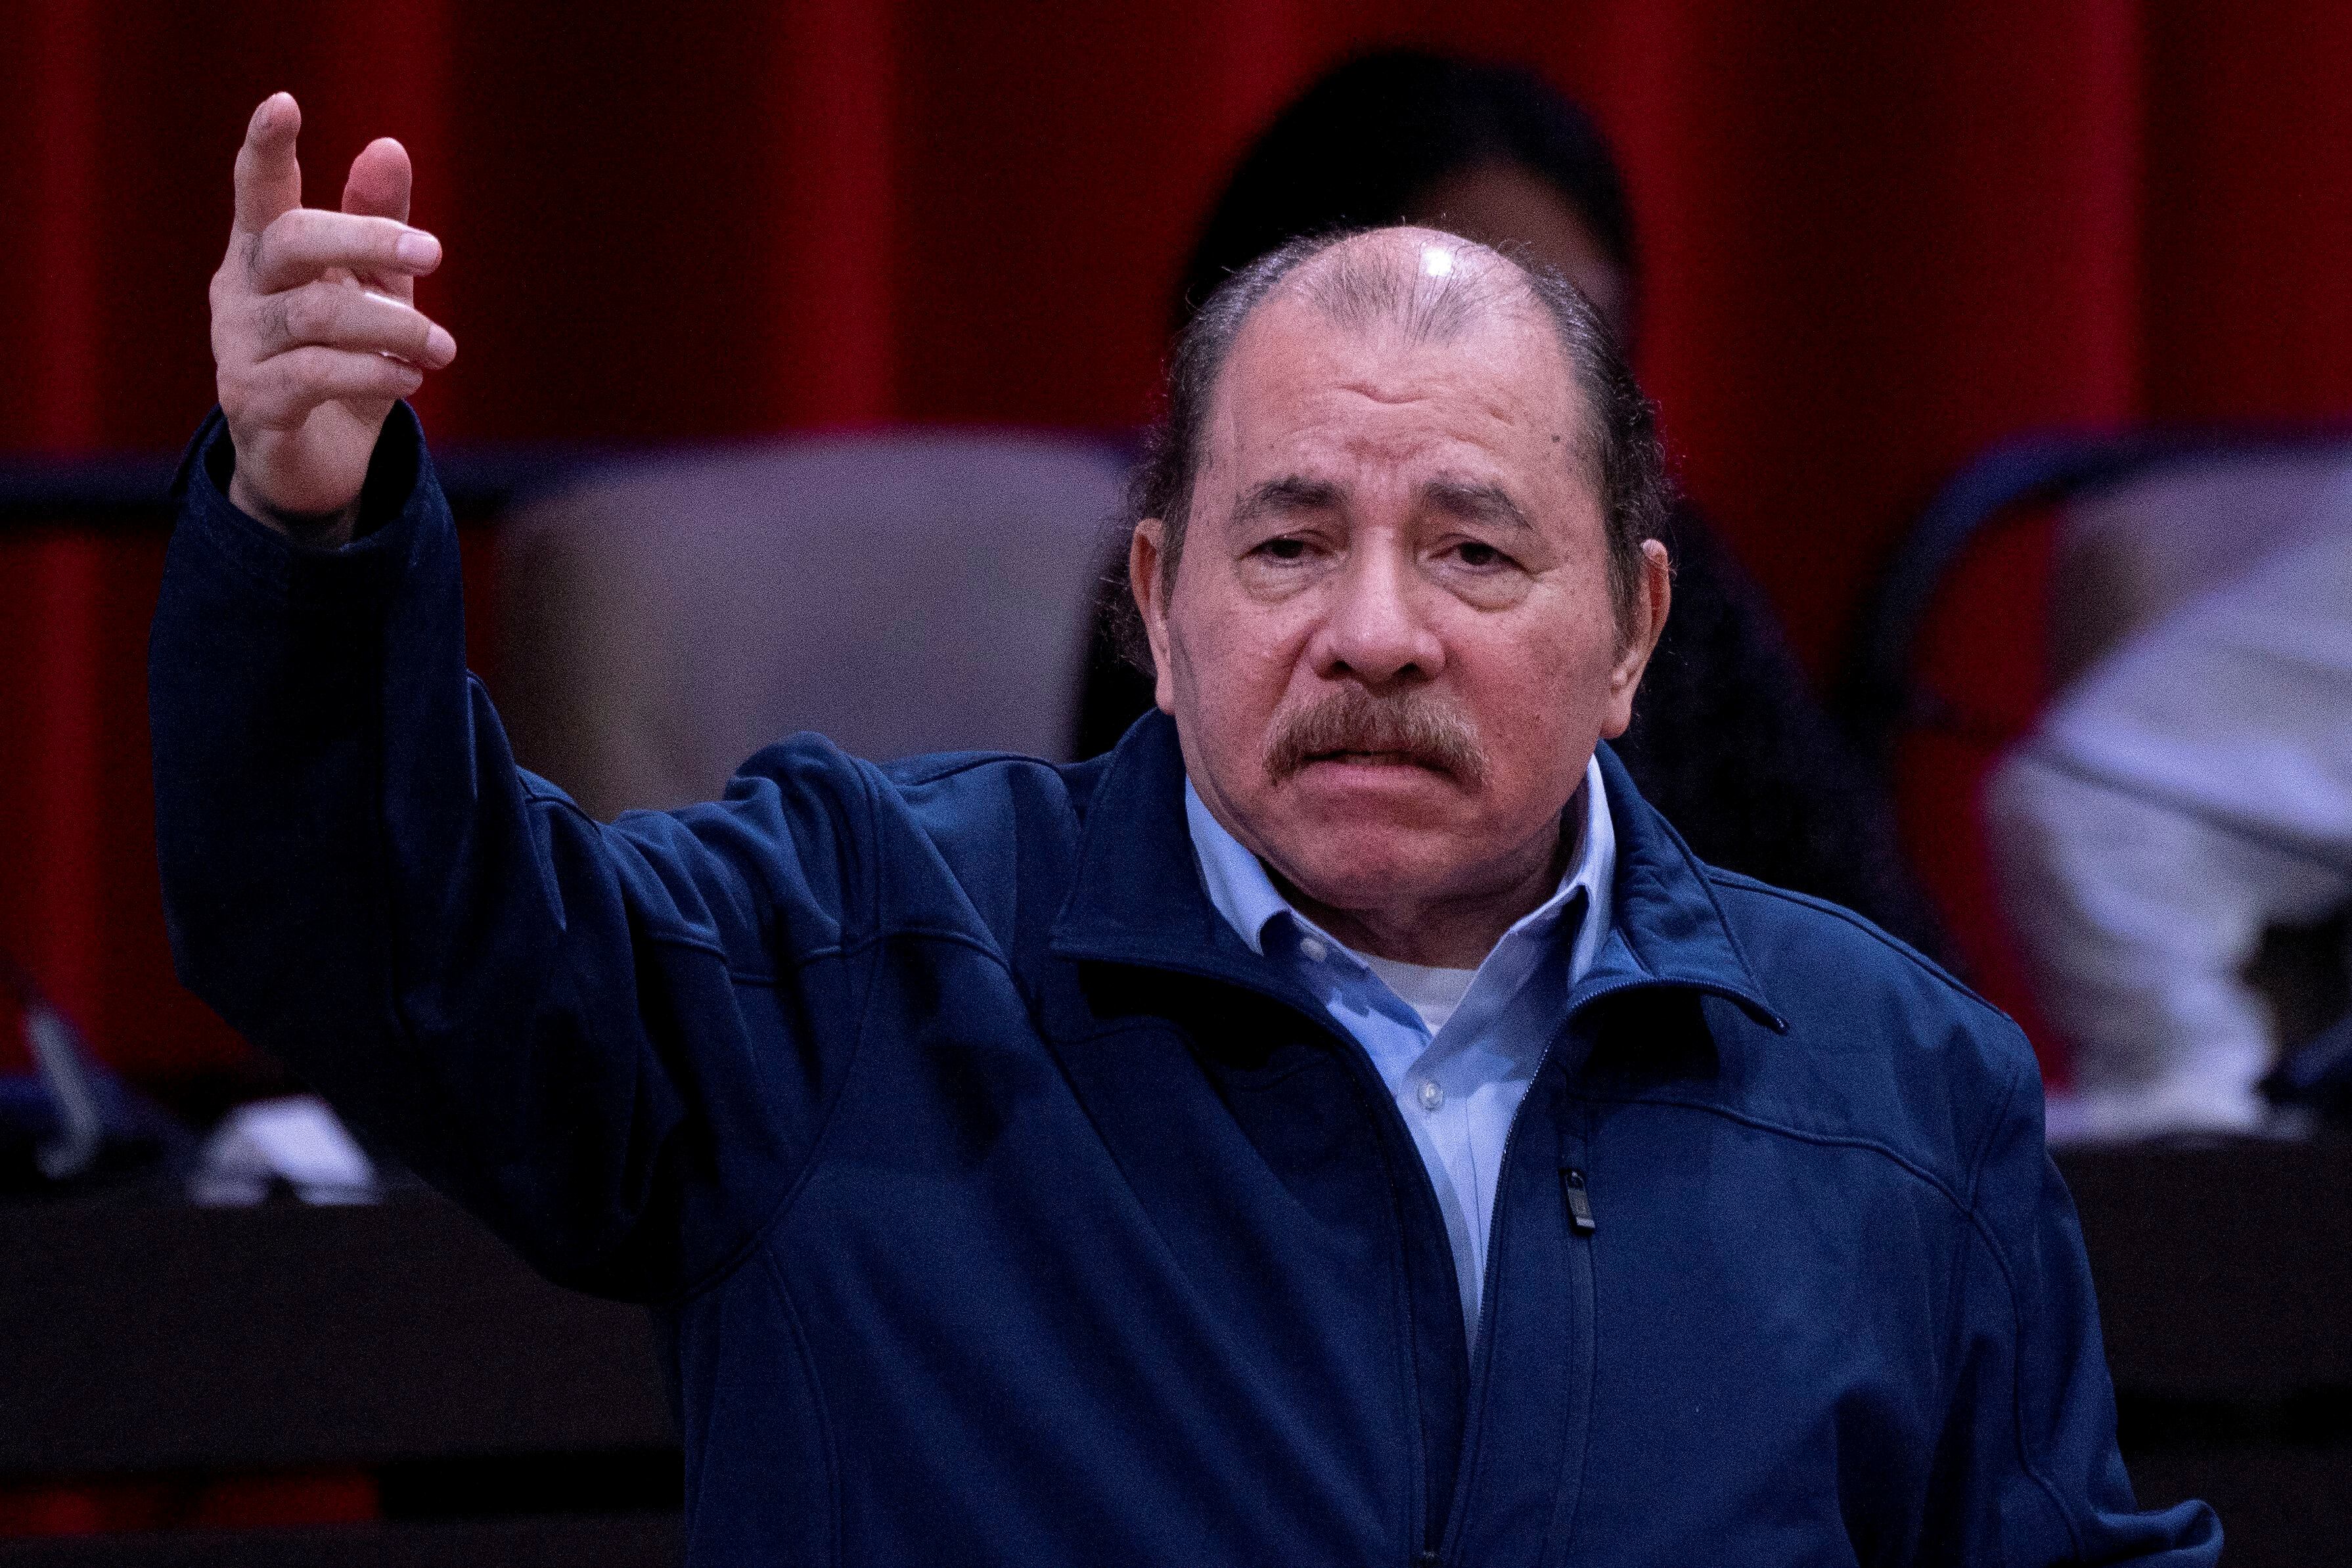 Gobierno de Daniel Ortega aprueba ‘disolución voluntaria’ de universidad católica en Nicaragua